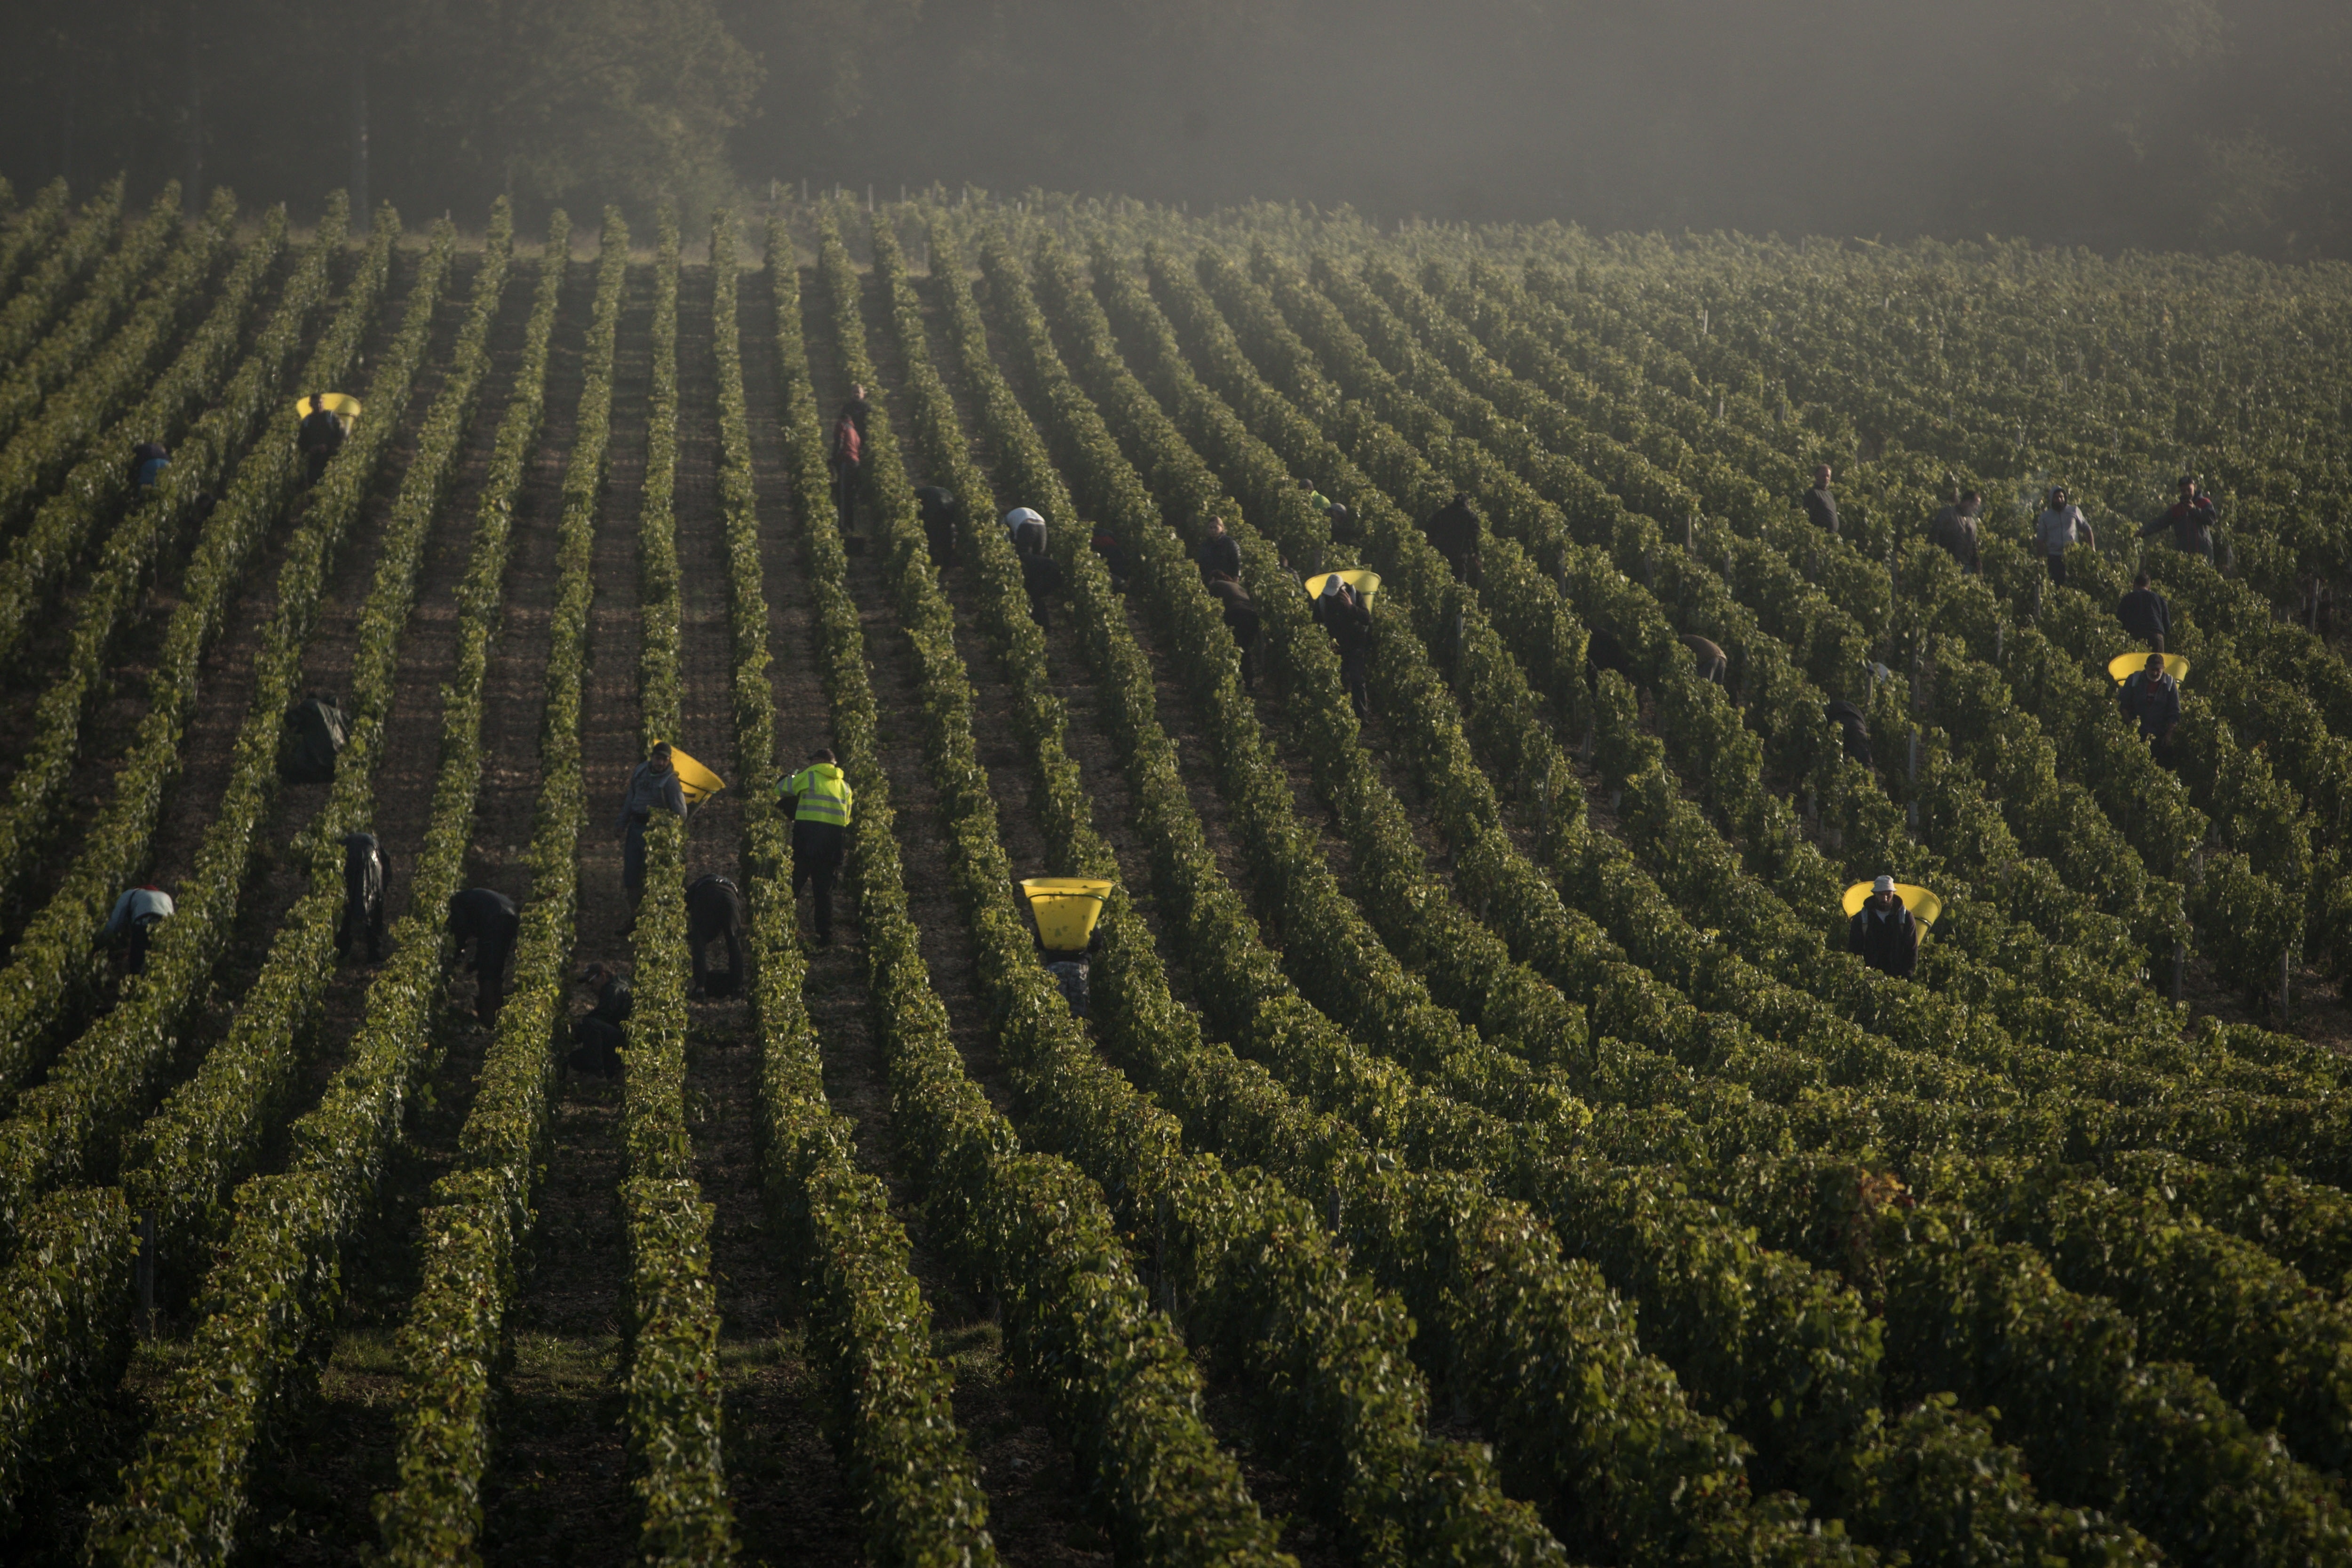 Harvest in Chablis Vineyard